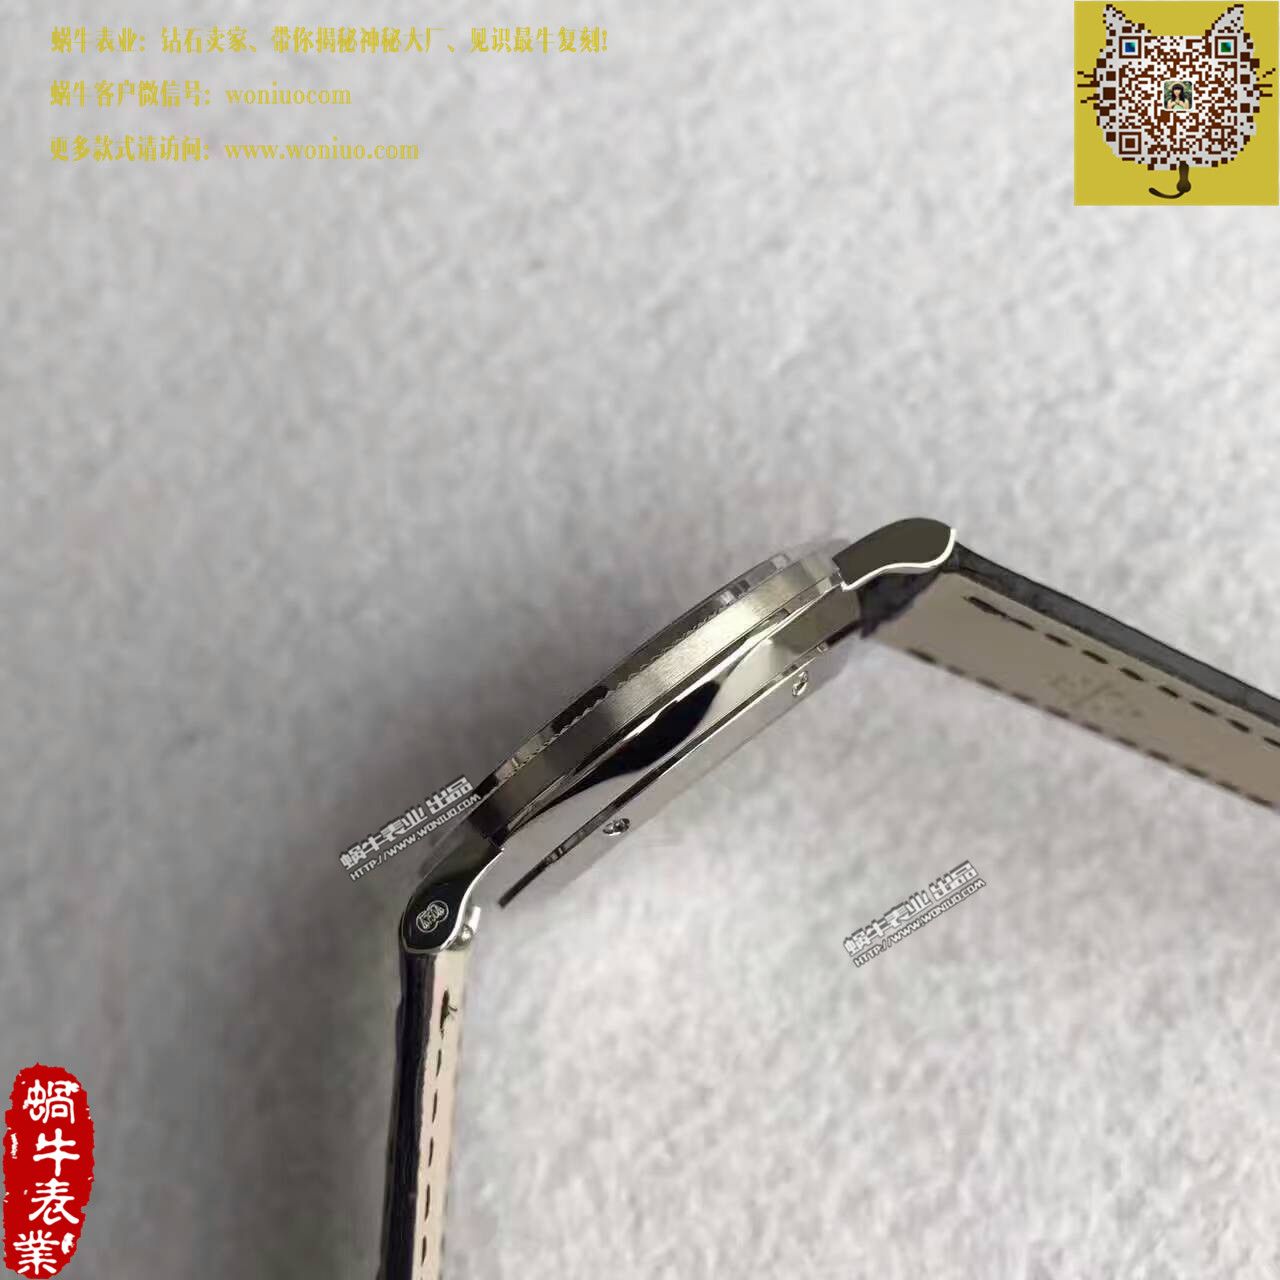 【台湾厂一比一超A精仿手表】百达翡丽古典表系列5119G-001腕表 / BD206